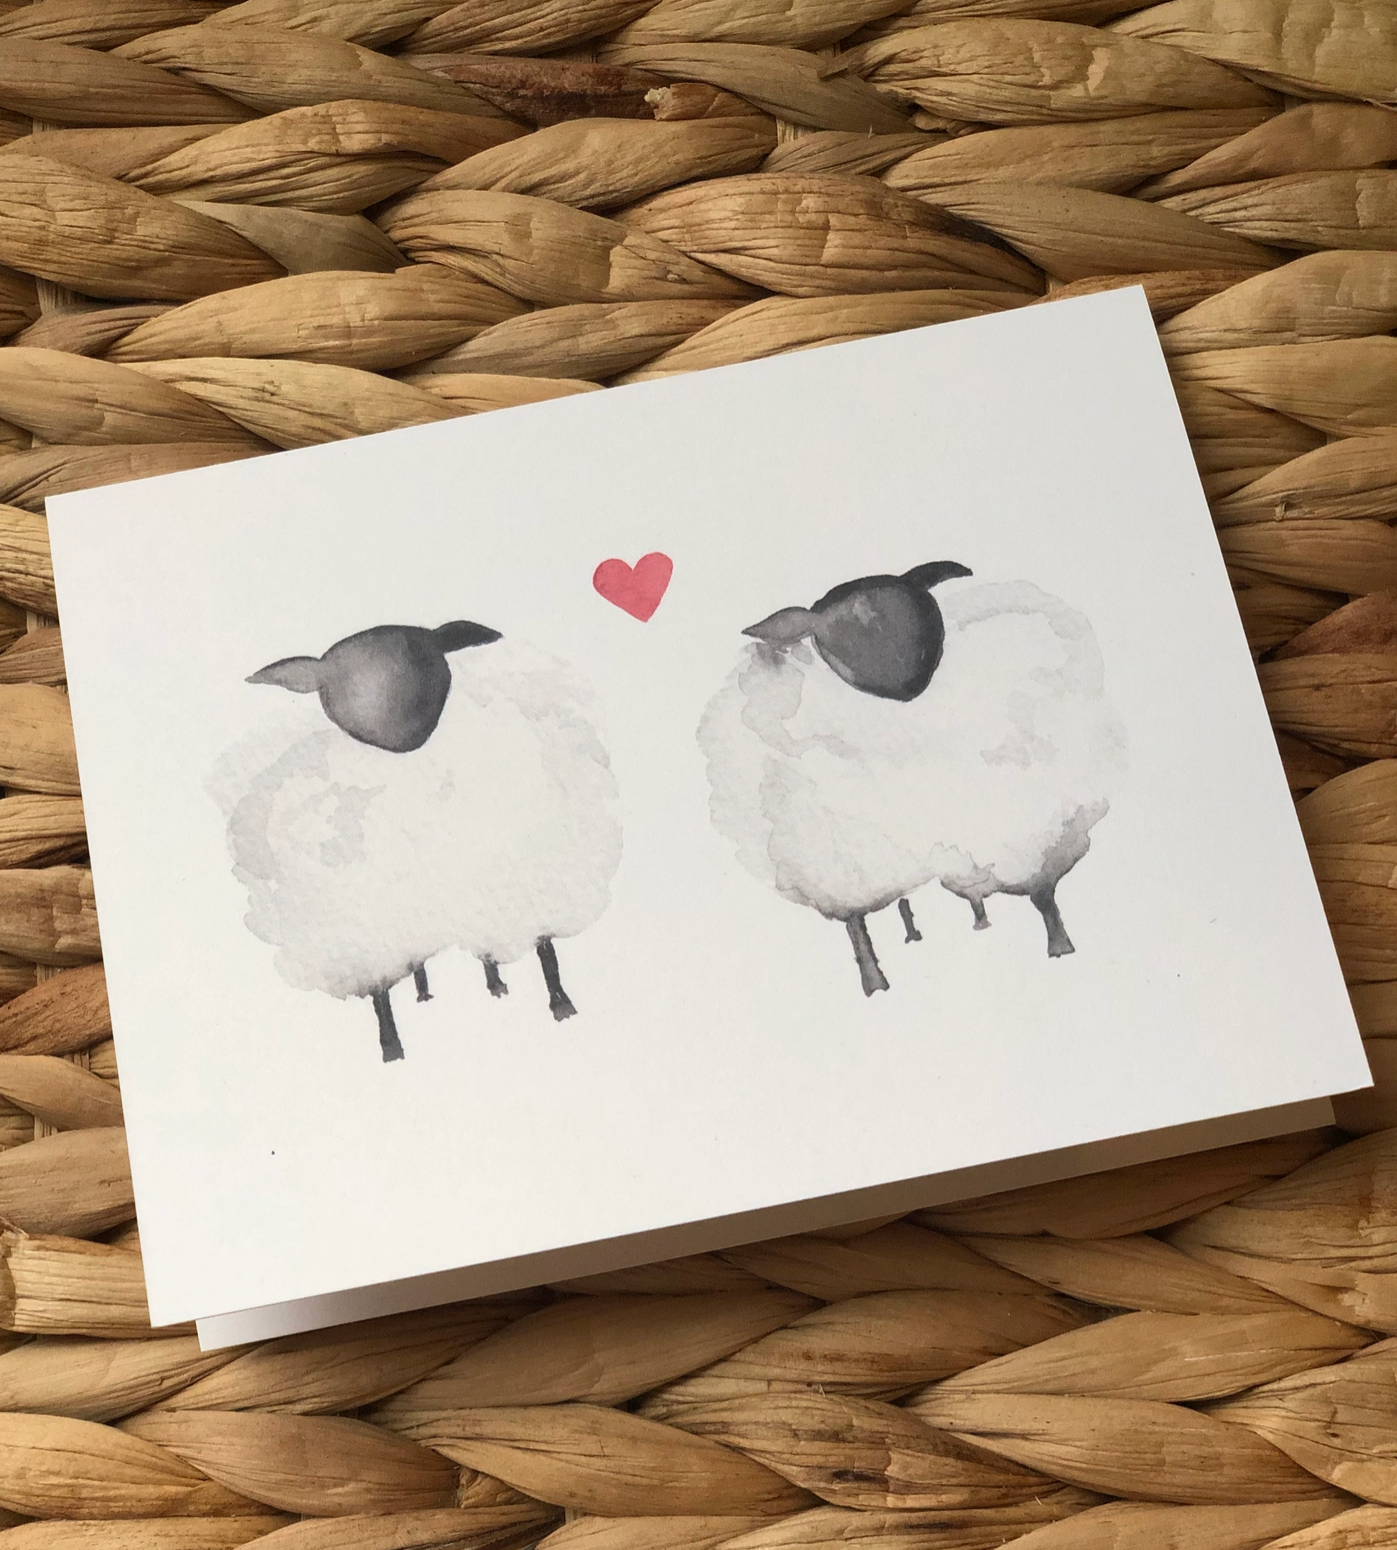 Love Ewe Card